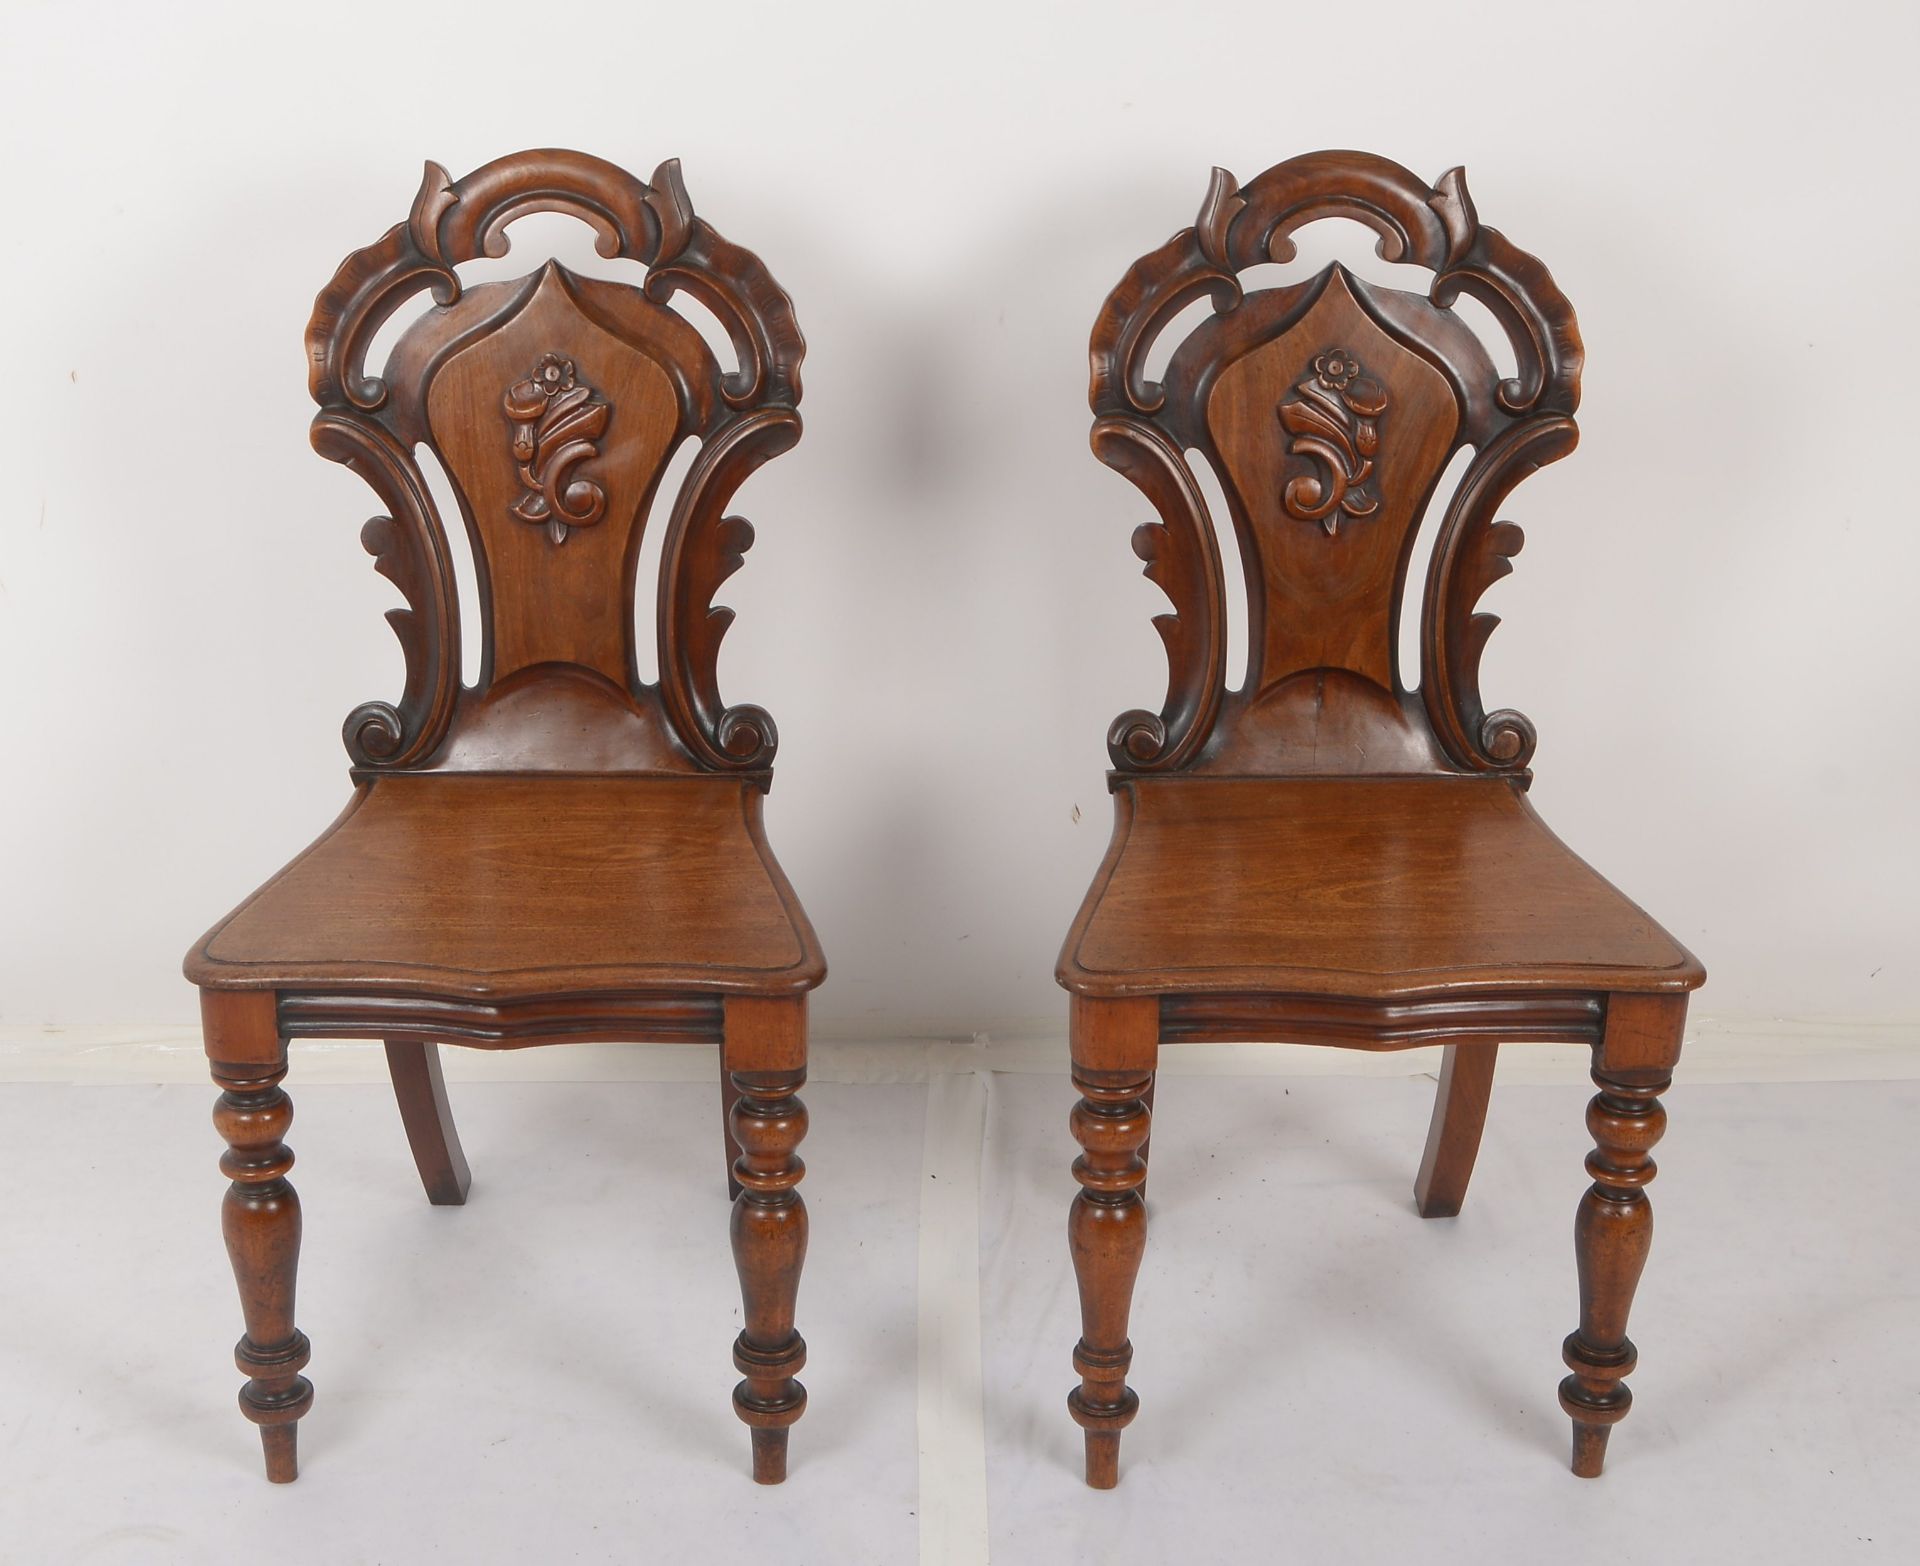 Paar Stuehle (England, viktorianisch/ca. 1880), -Hall Chairs-, Mahagoni, ausladende Rueckenlehne mit